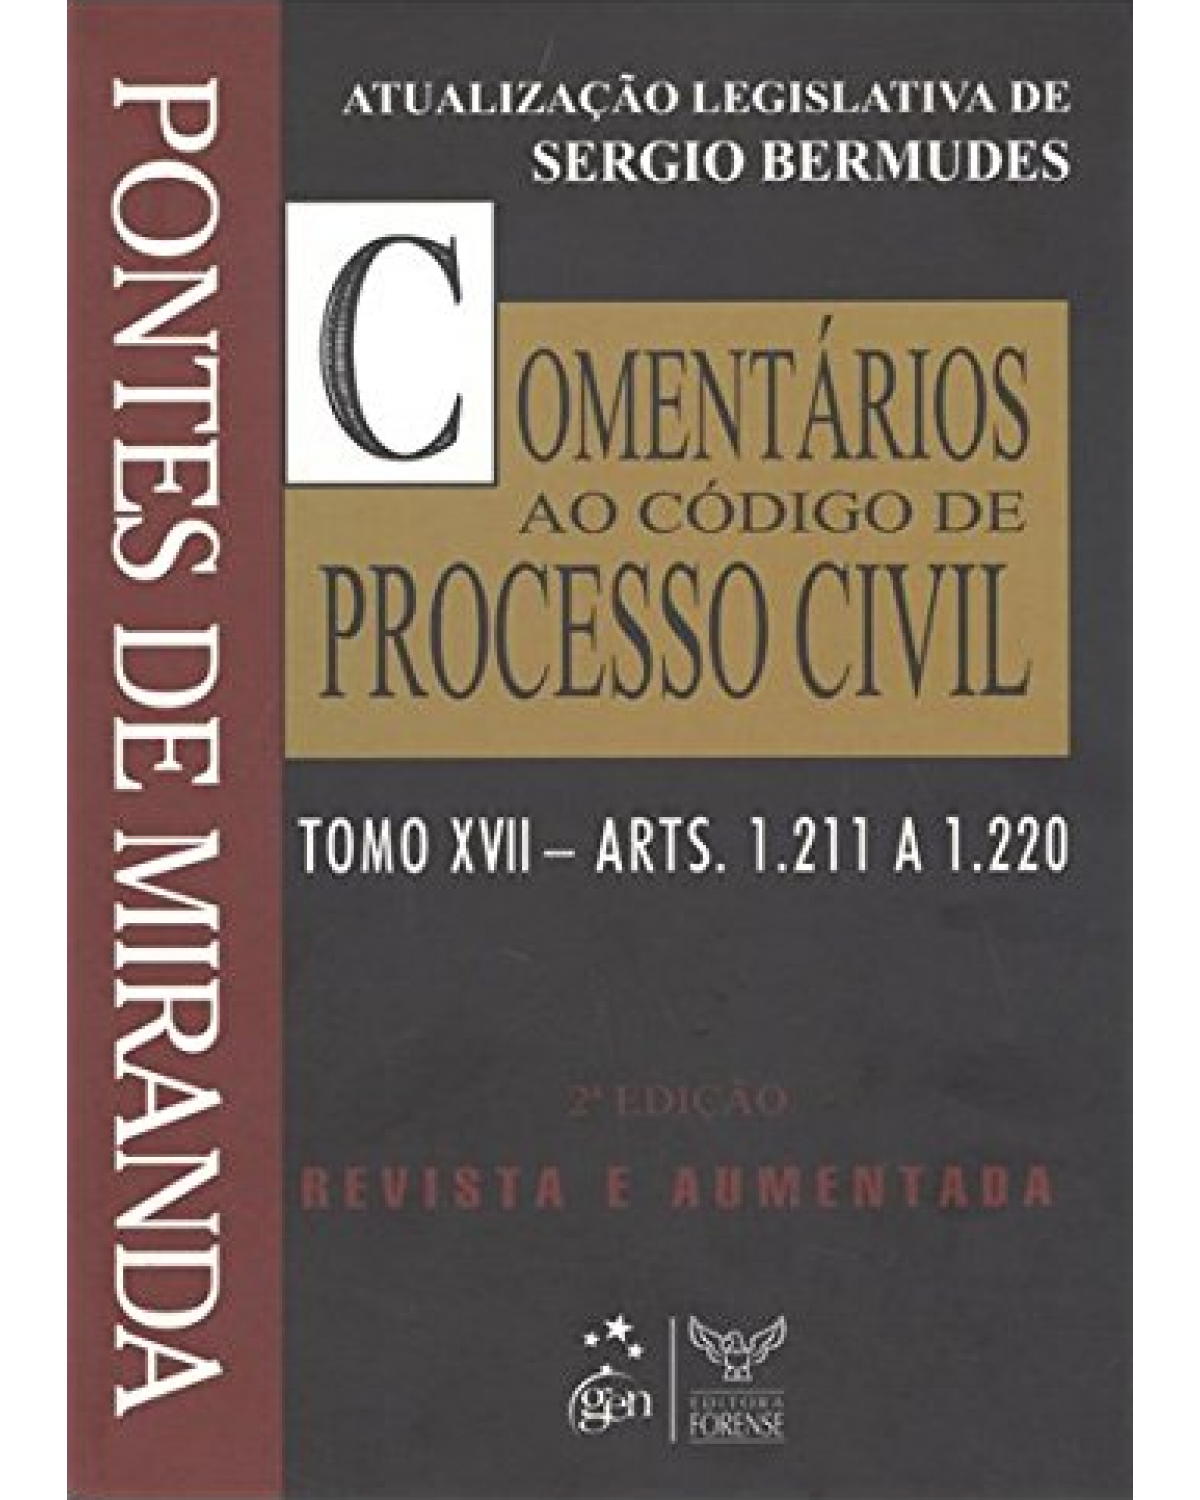 Comentários ao código de processo civil - Tomo XVII - Arts. 1.211 a 1.220 - 2ª Edição | 2010